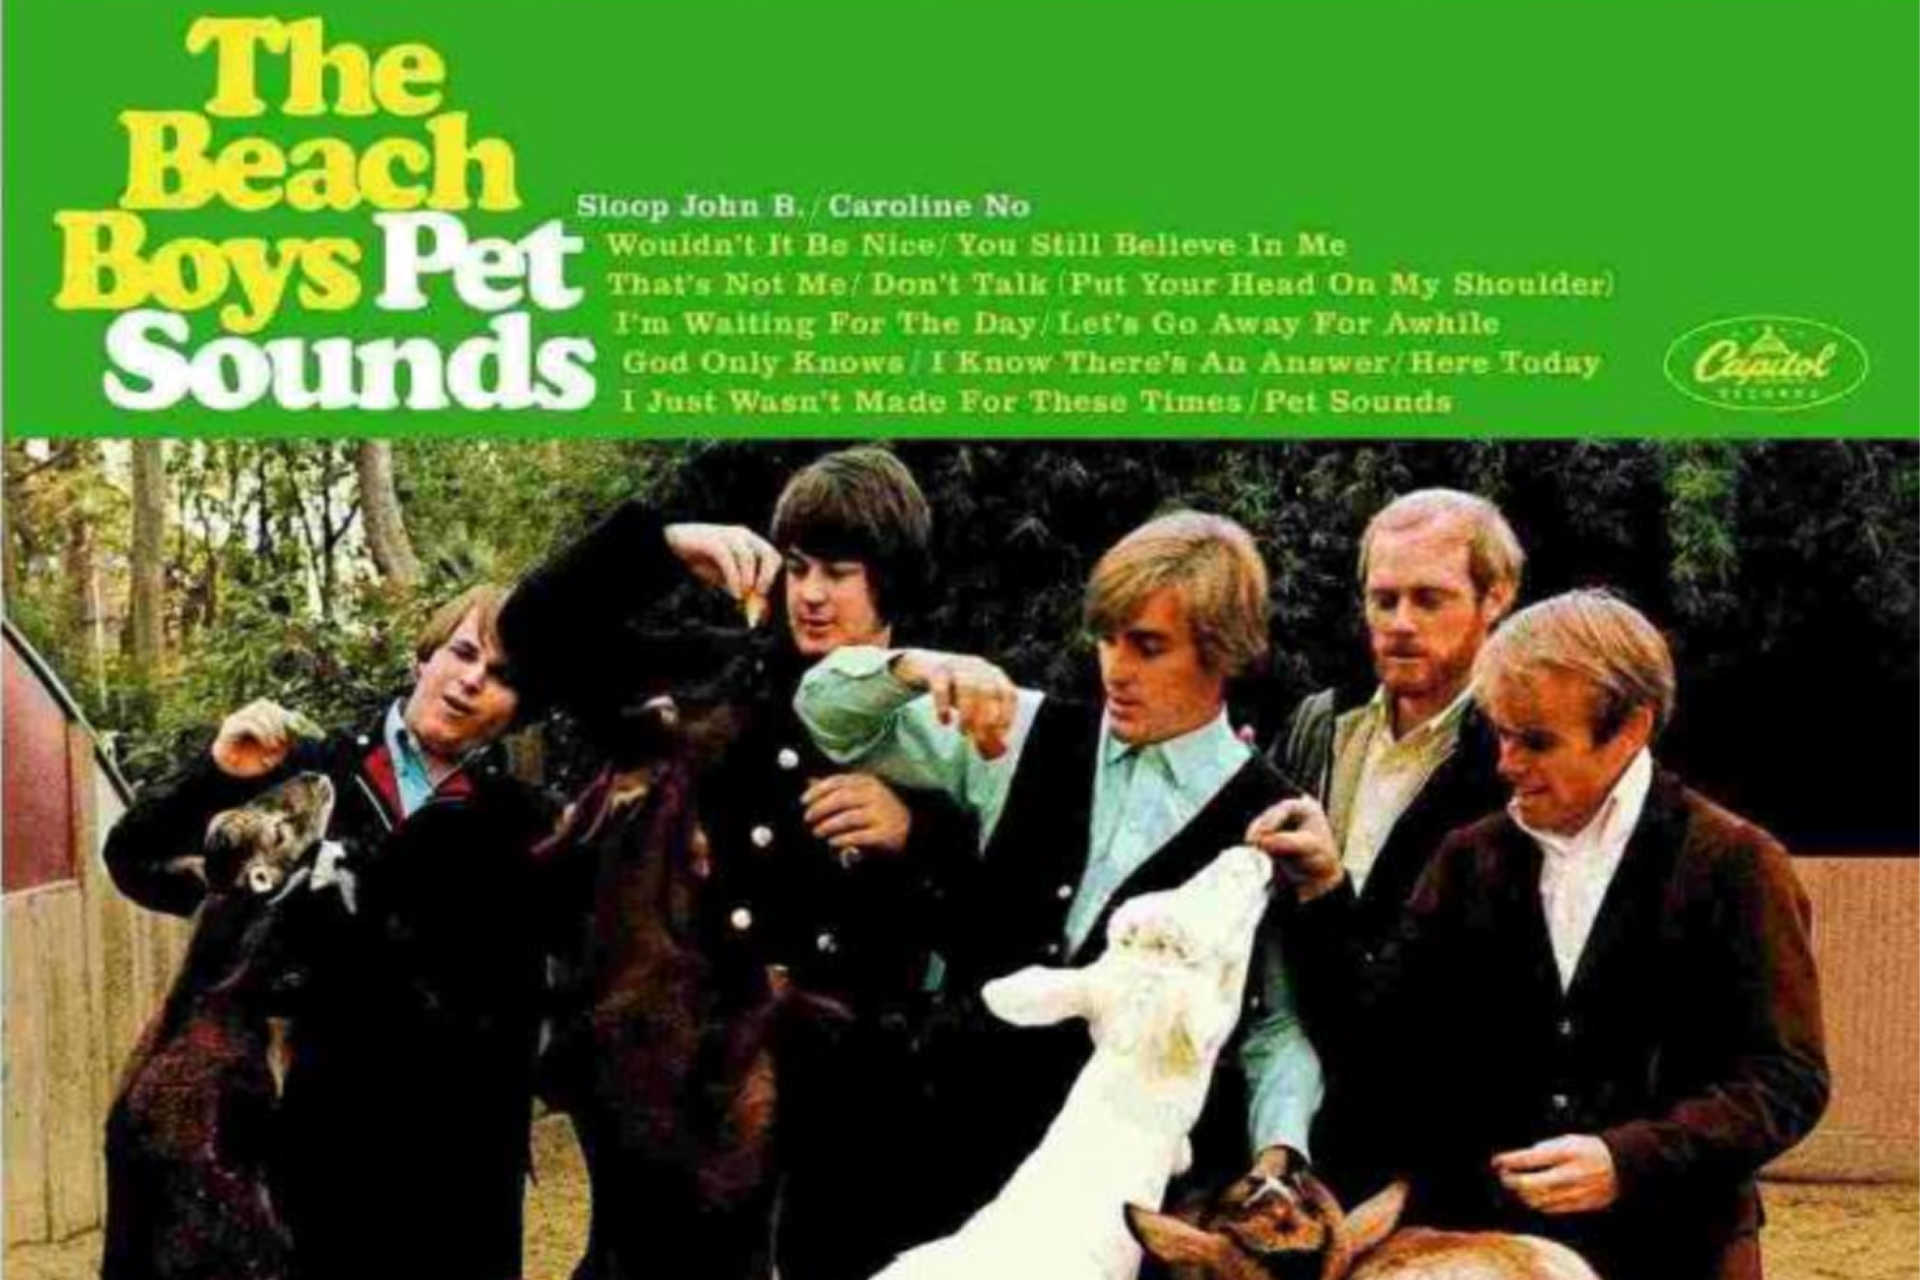 <p>De dierentuin van San Diego was de plaats waar de omslagfoto voor 'Pet Sounds' gemaakt werd. De naam van het album was bekend. Uiteindelijk kozen ze voor een close-up van het voeren van de geiten (geïnspireerd door een toneelstuk) in plaats van een exotisch dier. Meer dan een halve eeuw later spreekt het resultaat nog steeds tot de verbeelding.</p>